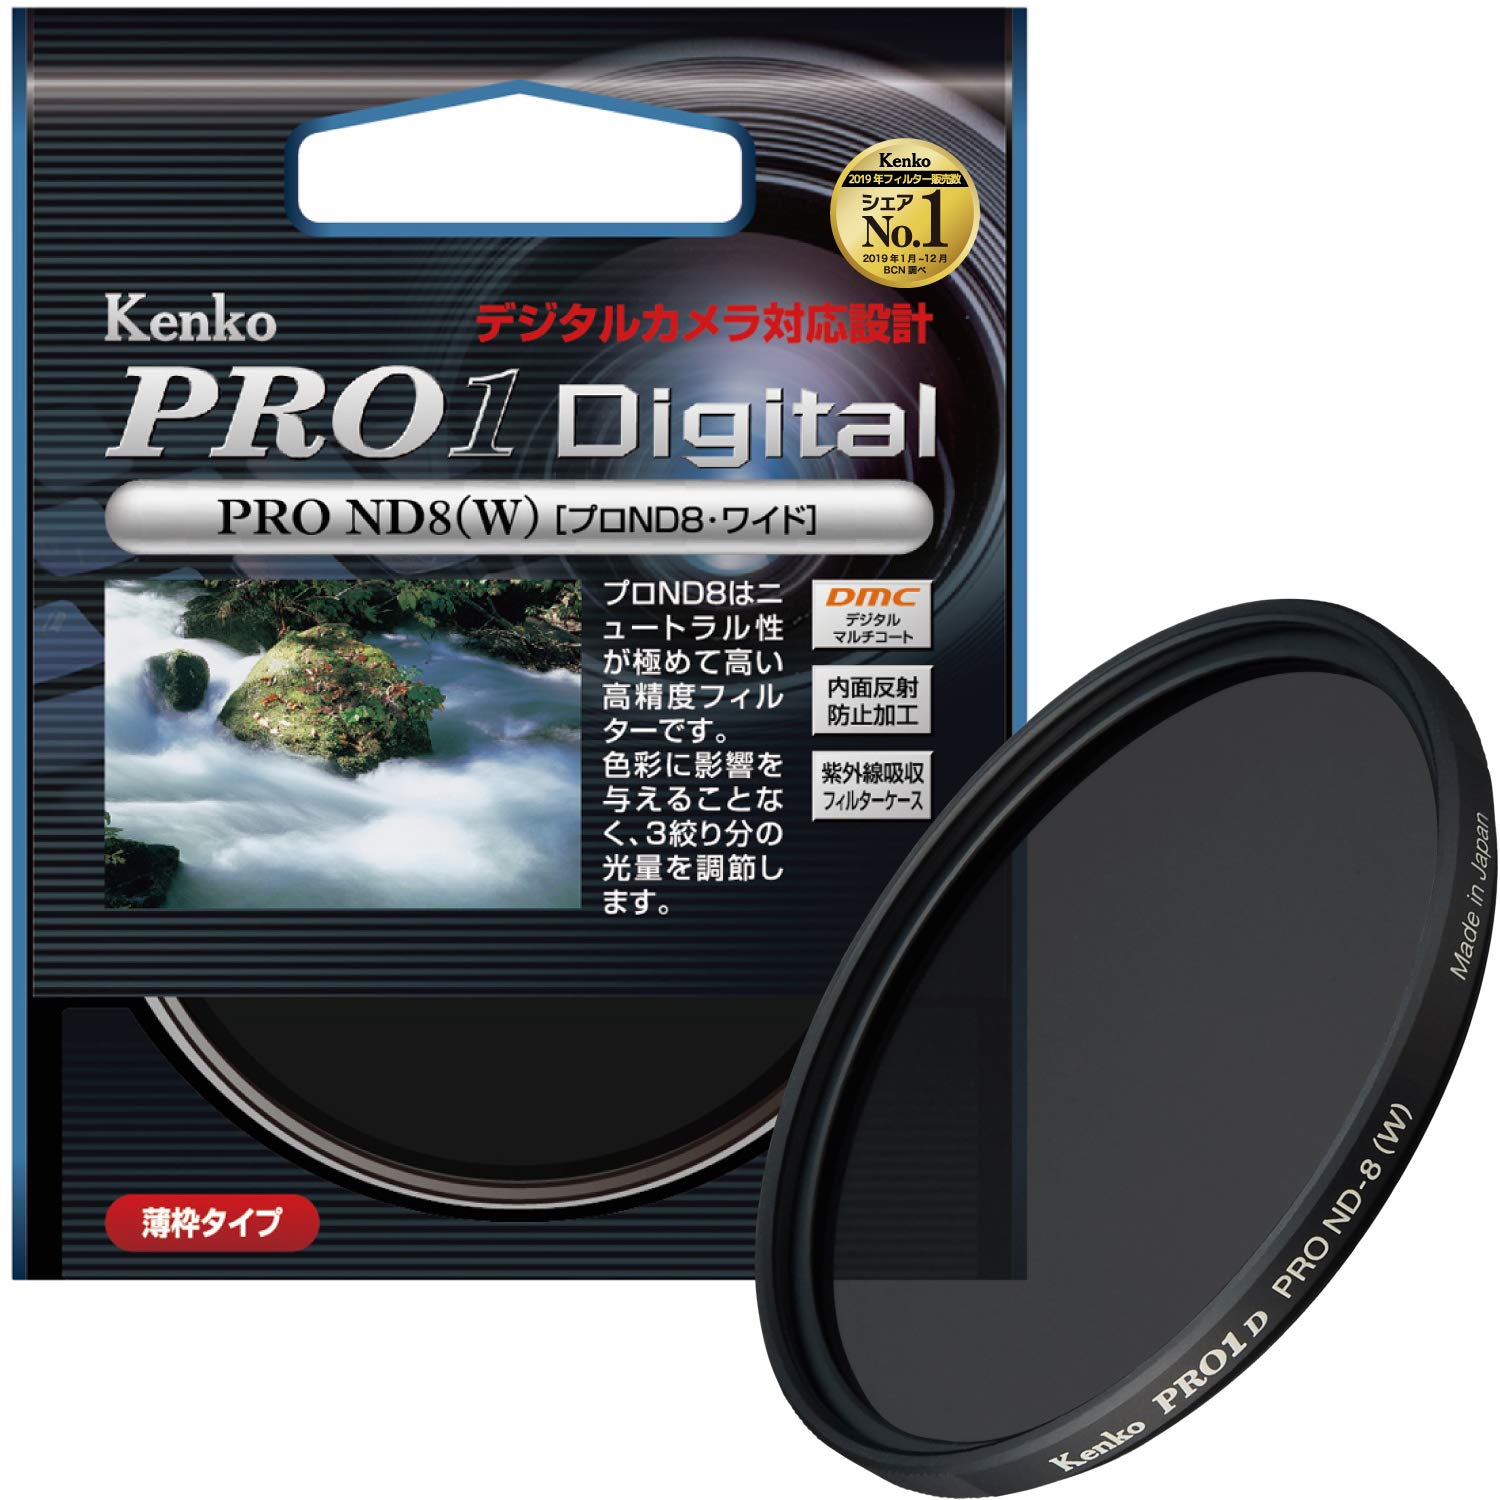 Kenko カメラ用フィルター PRO1D プロND8 (W) 49mm 光量調節用 249437